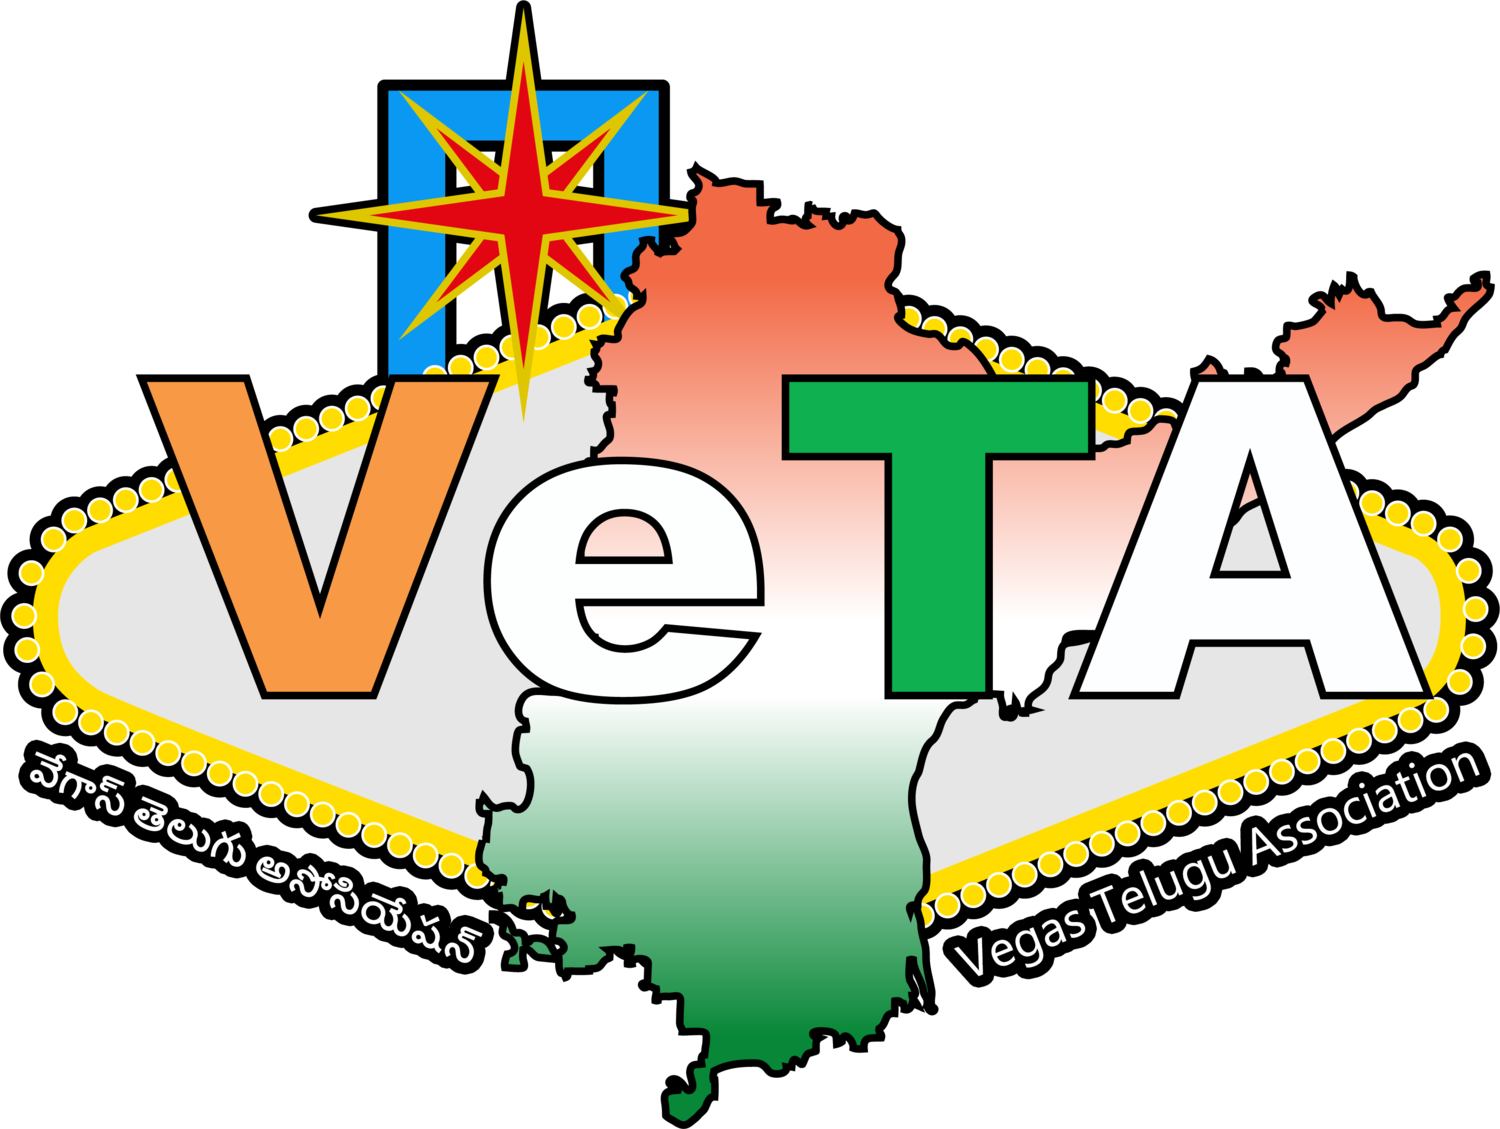 Vegas Telugu Association